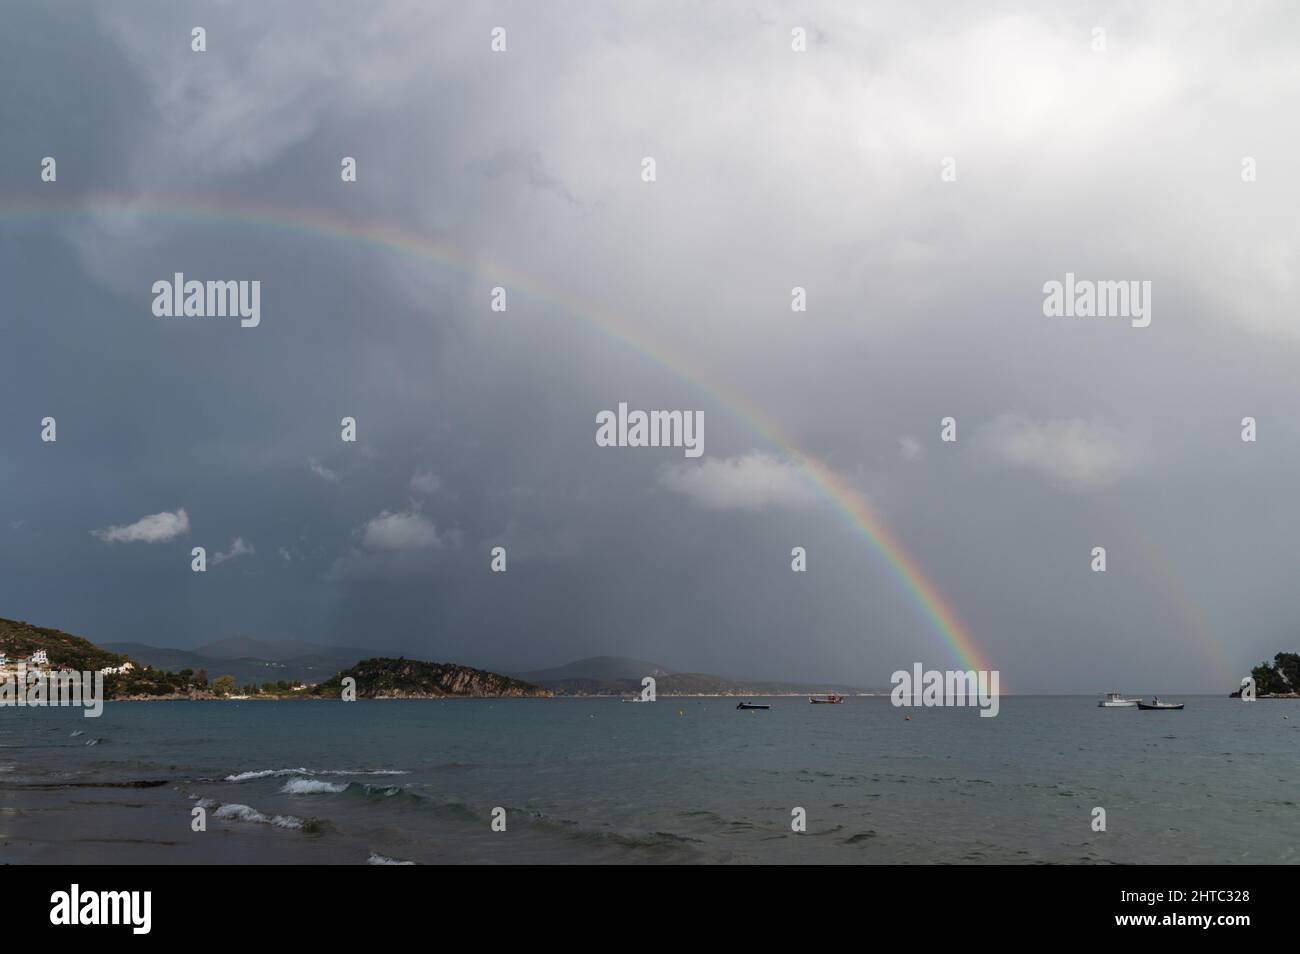 Regenbogen- und Fischerboote auf See. Das Foto wurde an einem bewölkten Tag aufgenommen Stockfoto